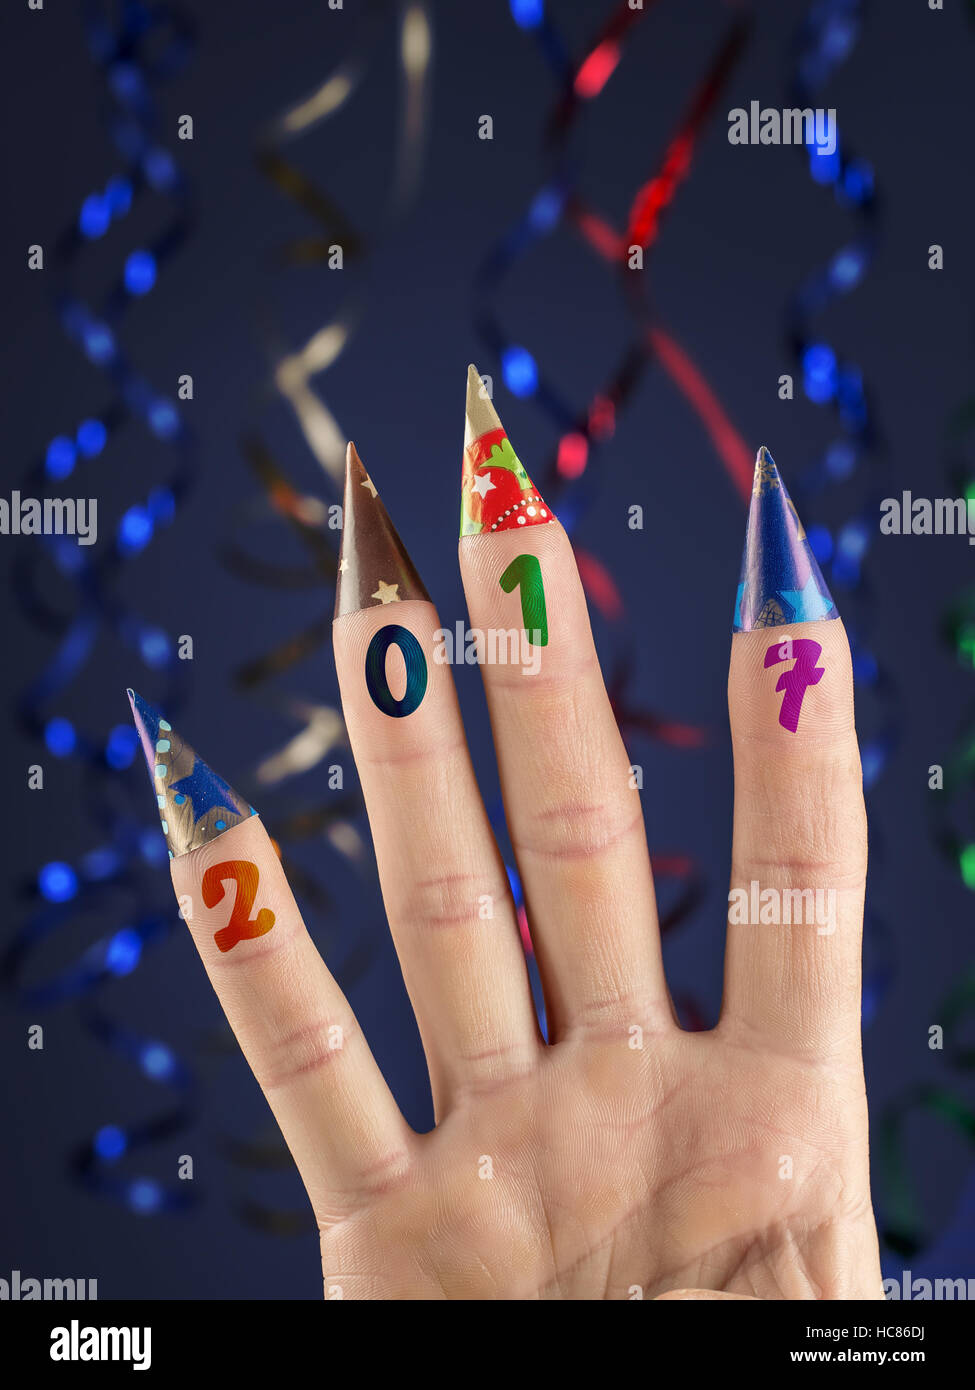 Quattro dita con impresso il 2017 data decorate con coni di carta su sfondo blu scuro con stelle filanti Foto Stock